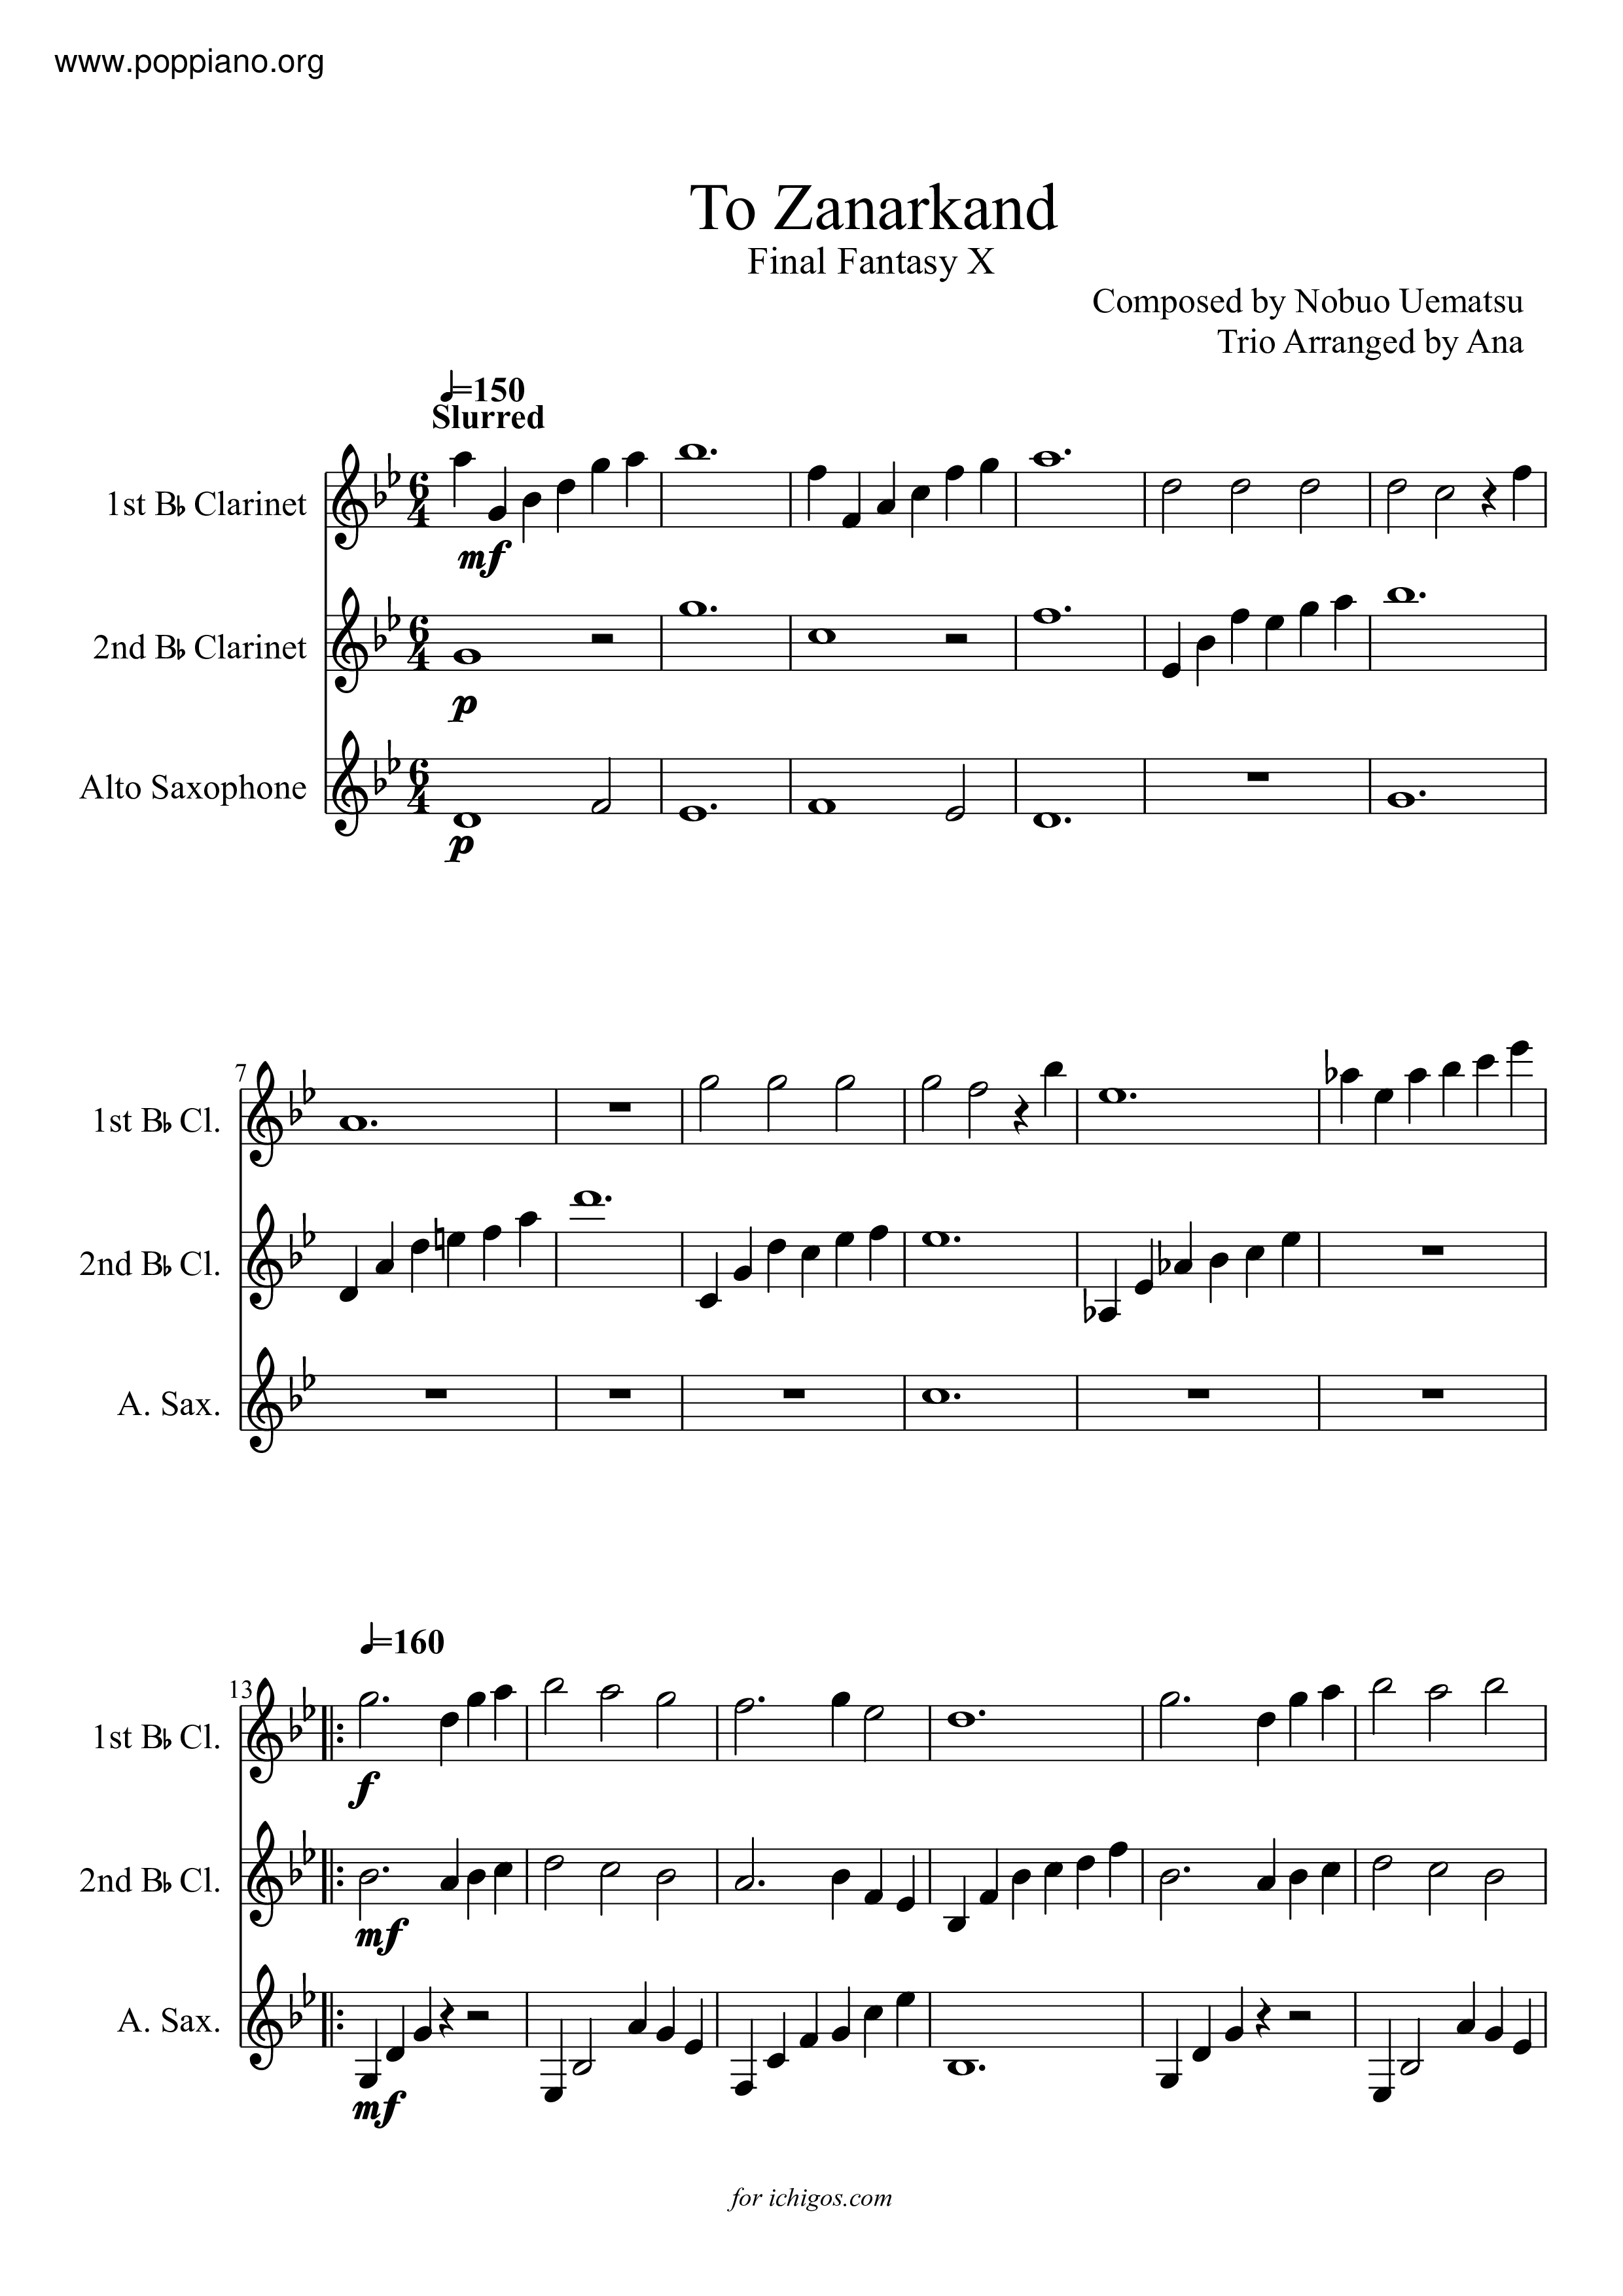 ☆ Final Fantasy X-To Sheet Music pdf, -ザナルカンドにて 楽譜 Free Score Download ☆